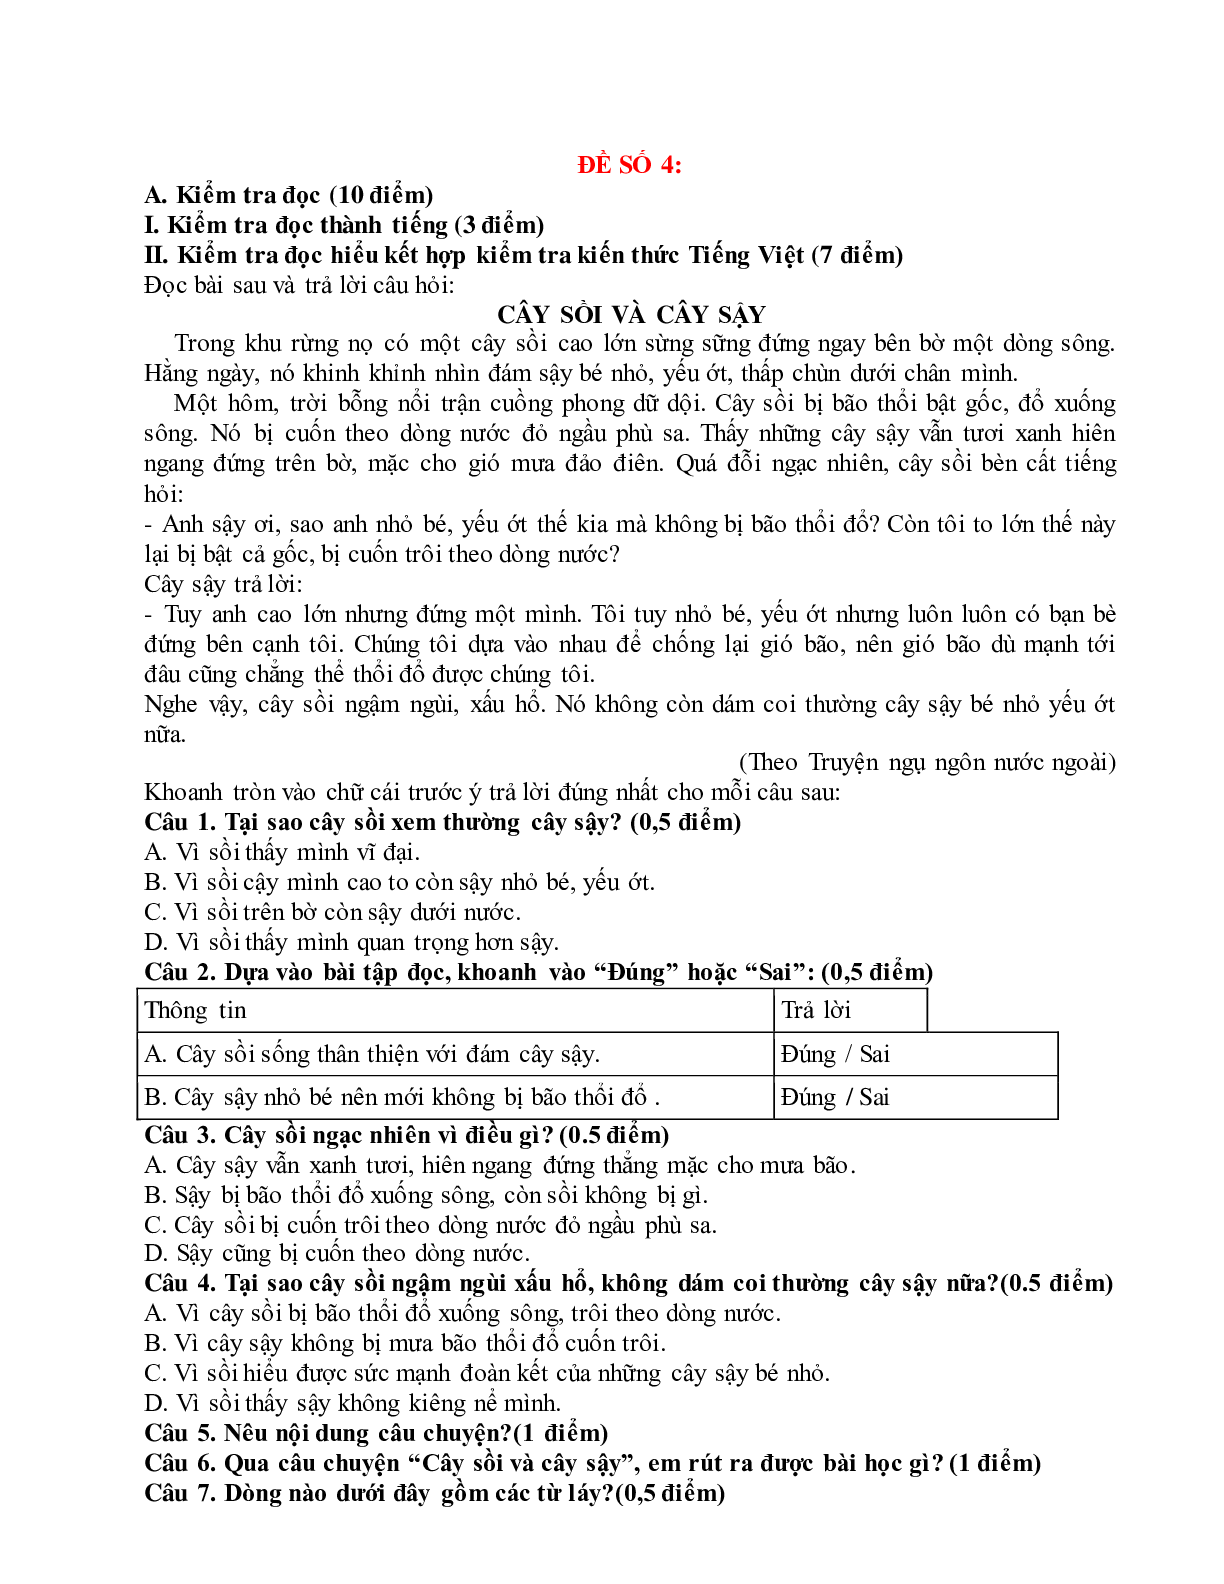 Đề thi Giữa học kì 1 Tiếng việt lớp 4 (10 đề) (trang 7)